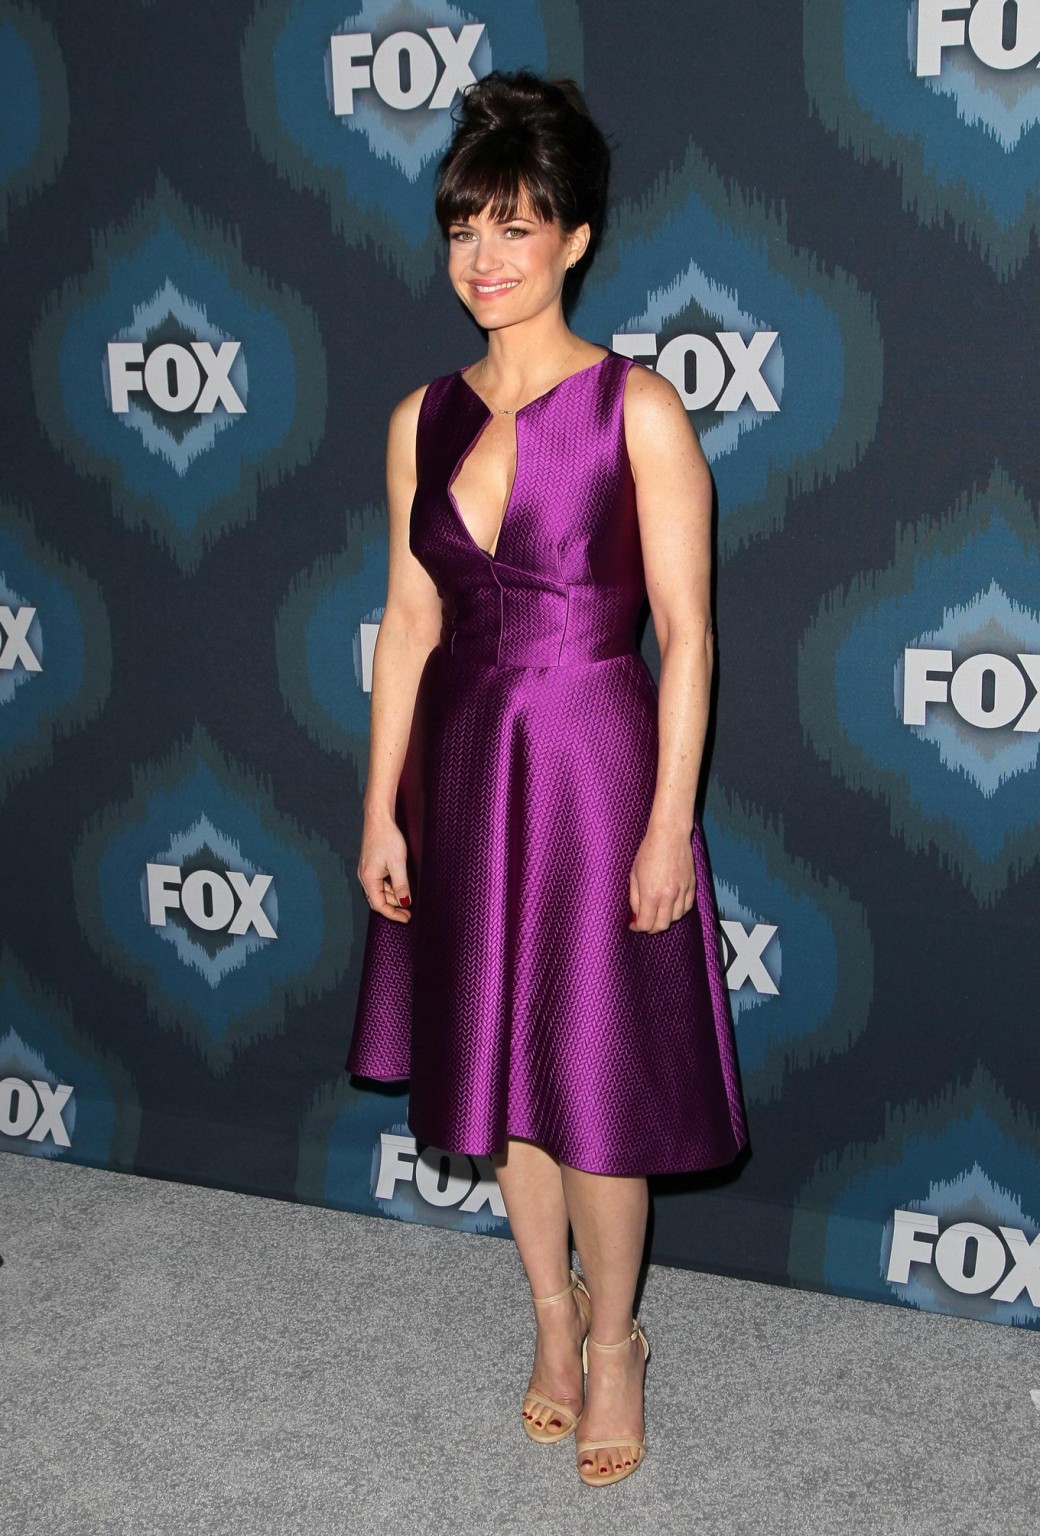 カーラ・グギノ、2015年FOXでパープルのローカットドレスを着て巨乳をブラレスで披露
 #75175562